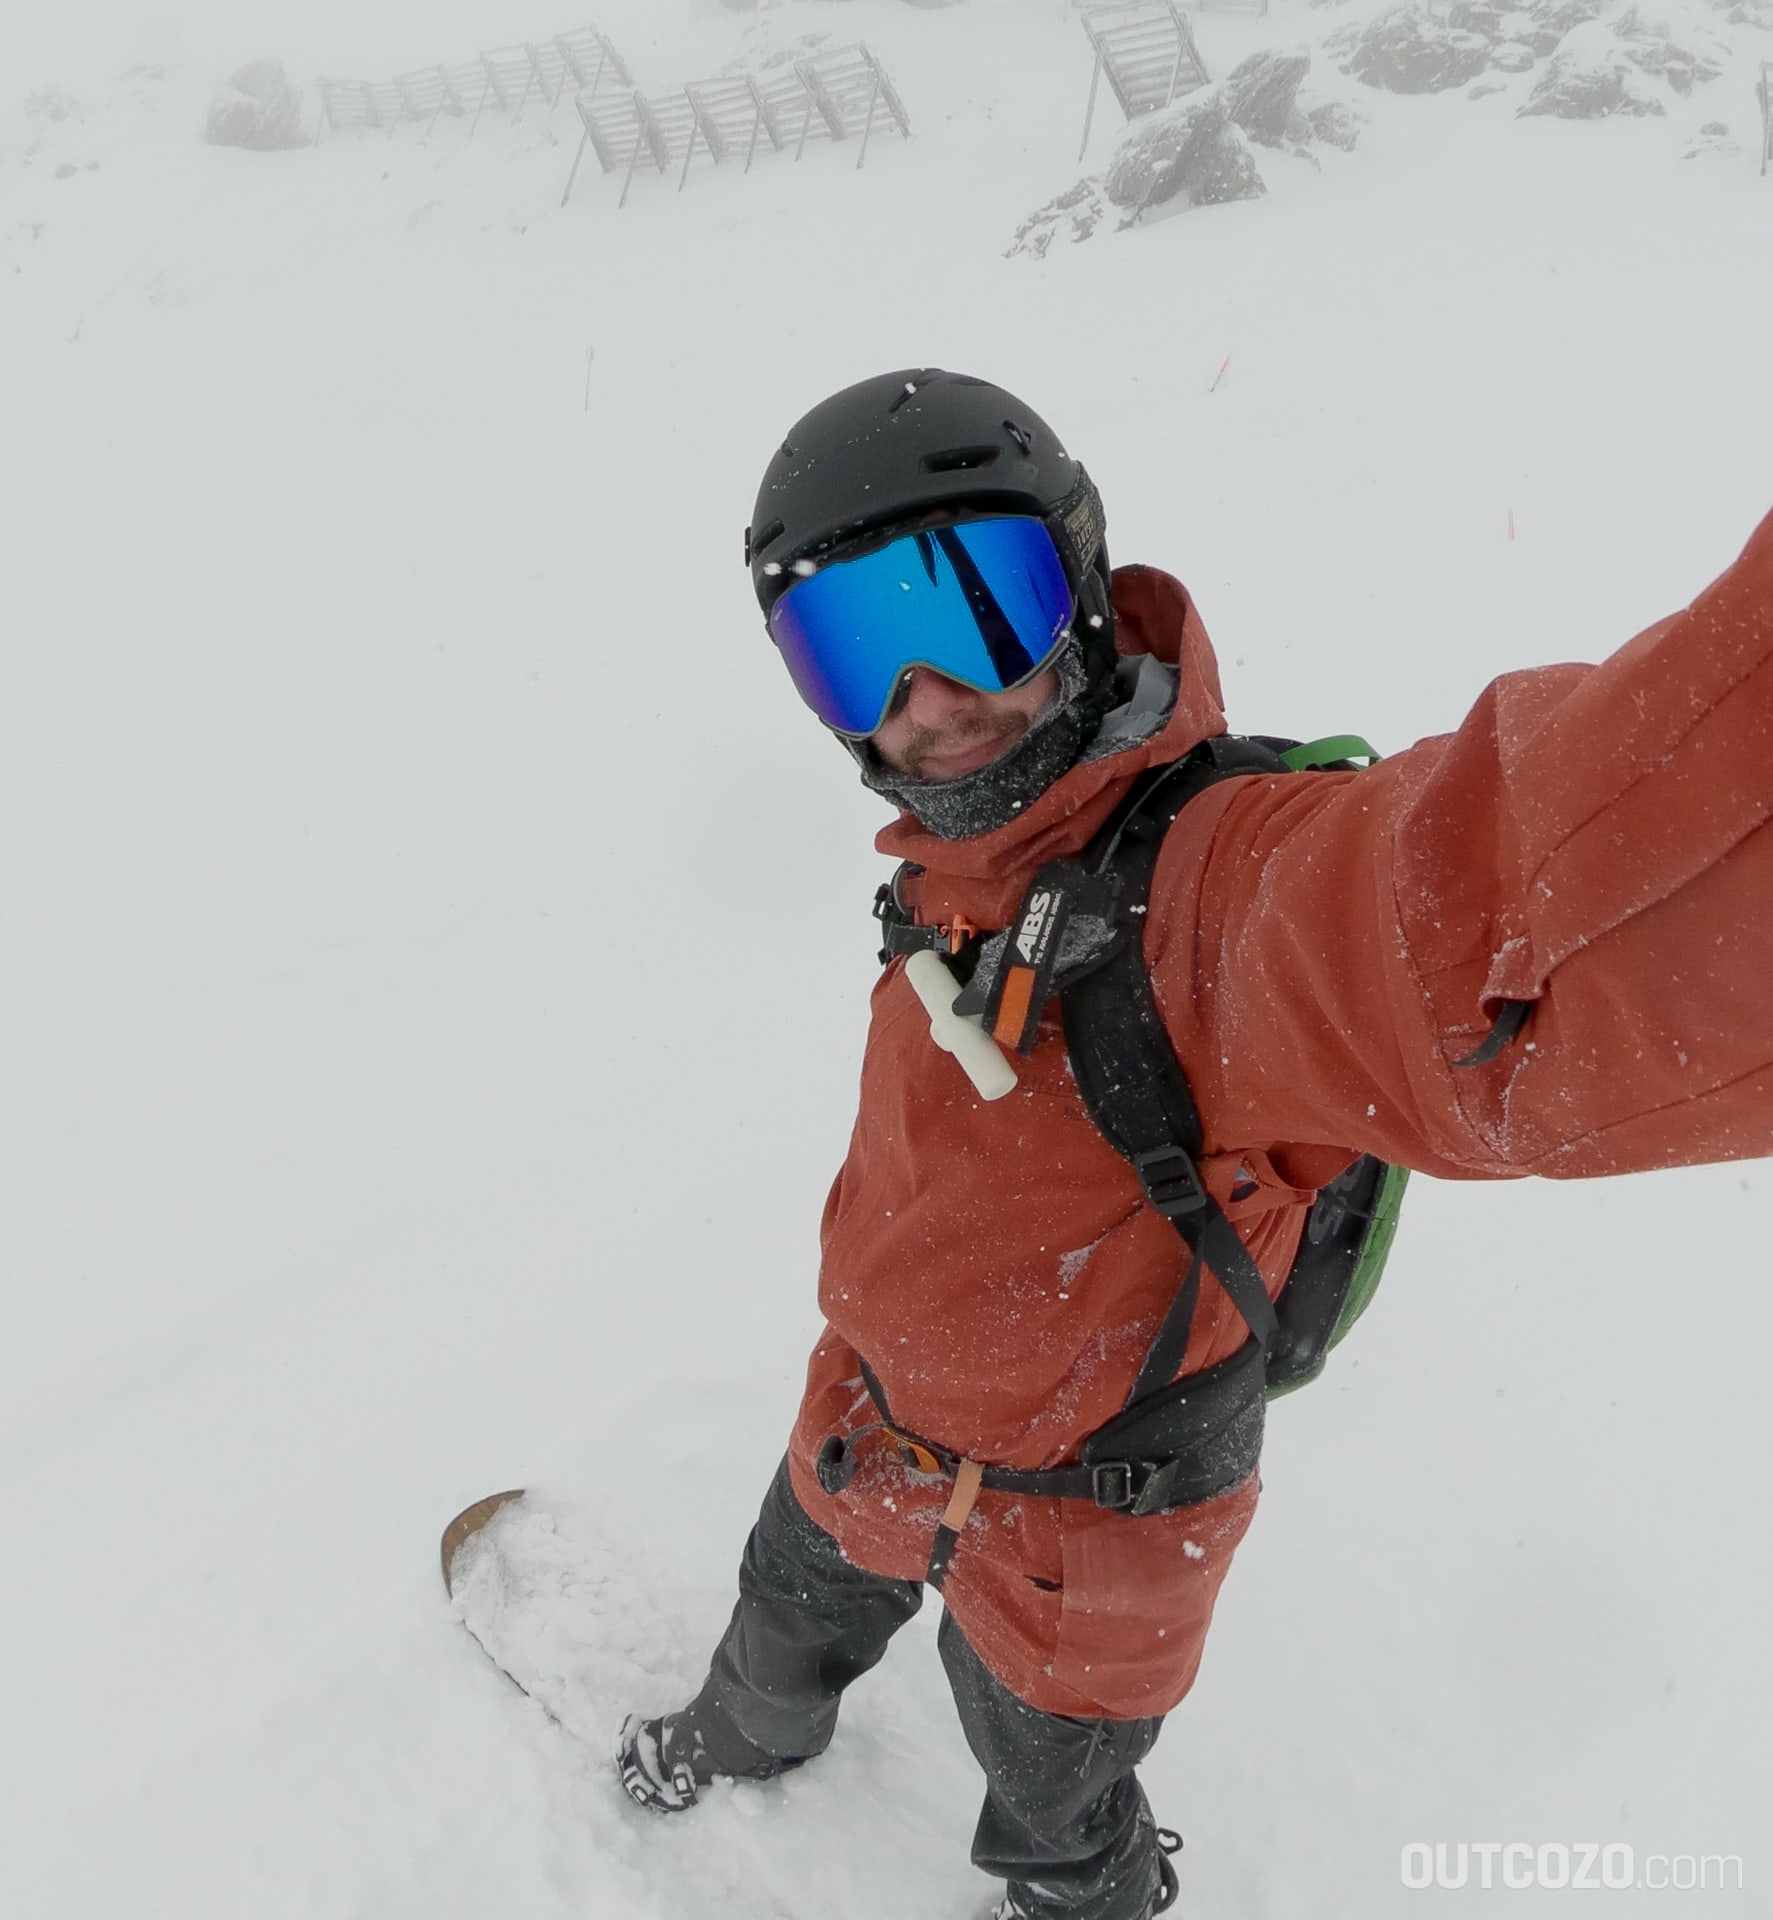 Julbo Quickshift Brille und Julbo Peak LT Helm beim Snowboarden im Nebel.